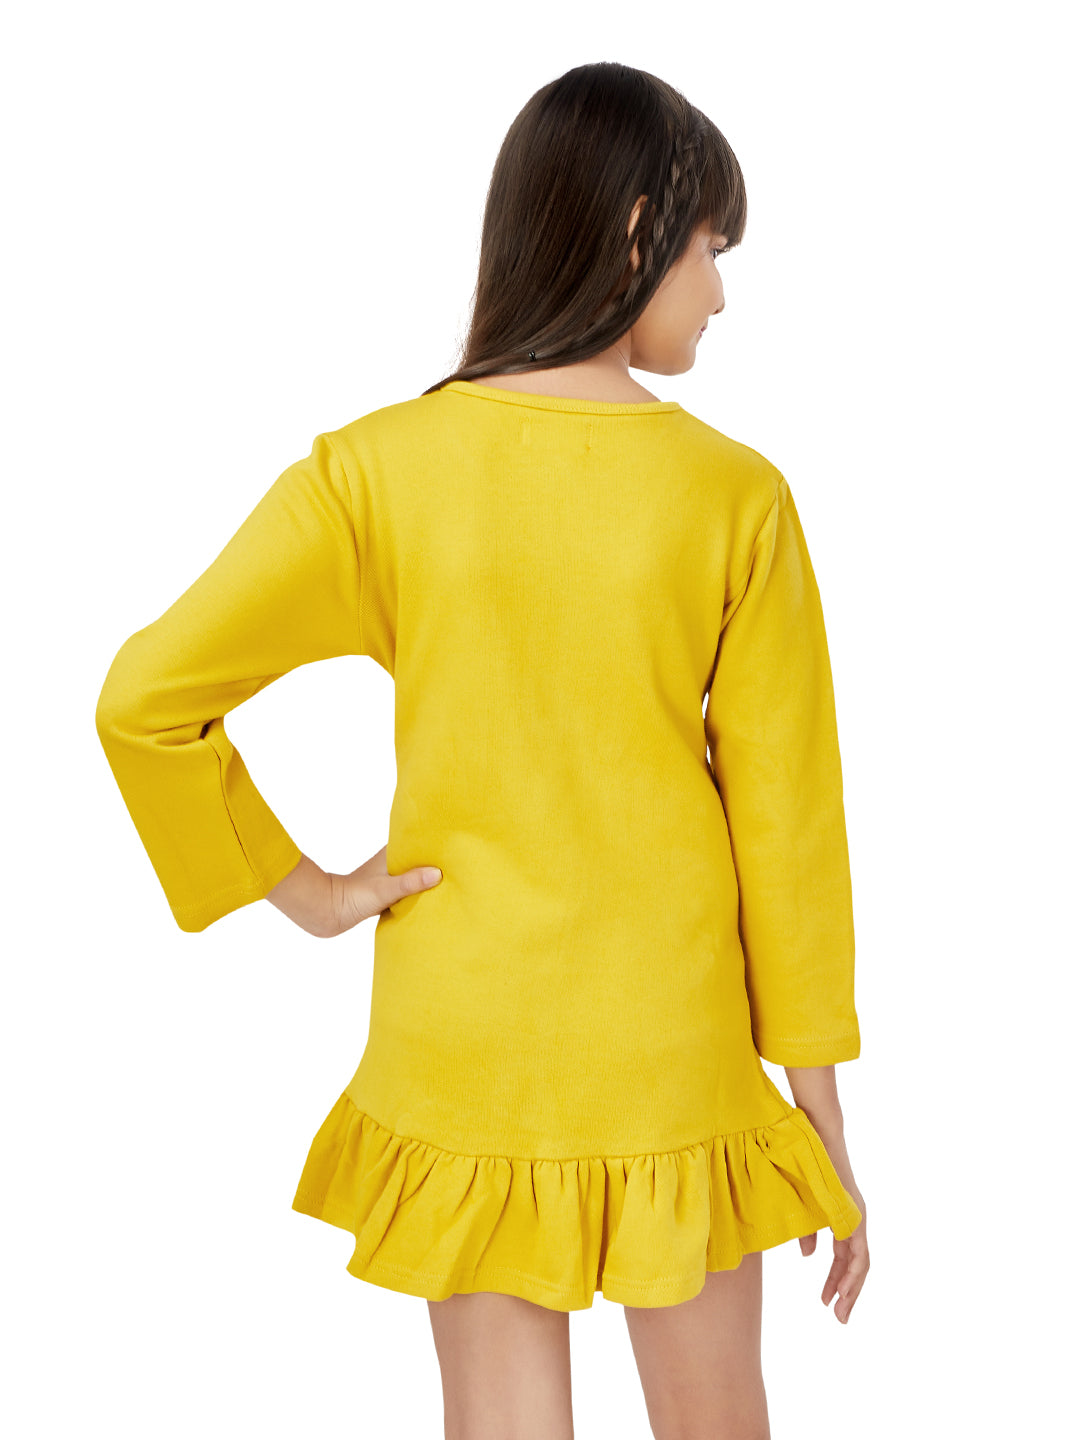 Olele® Girls Fleece Yellow Jacket with Front Zipper